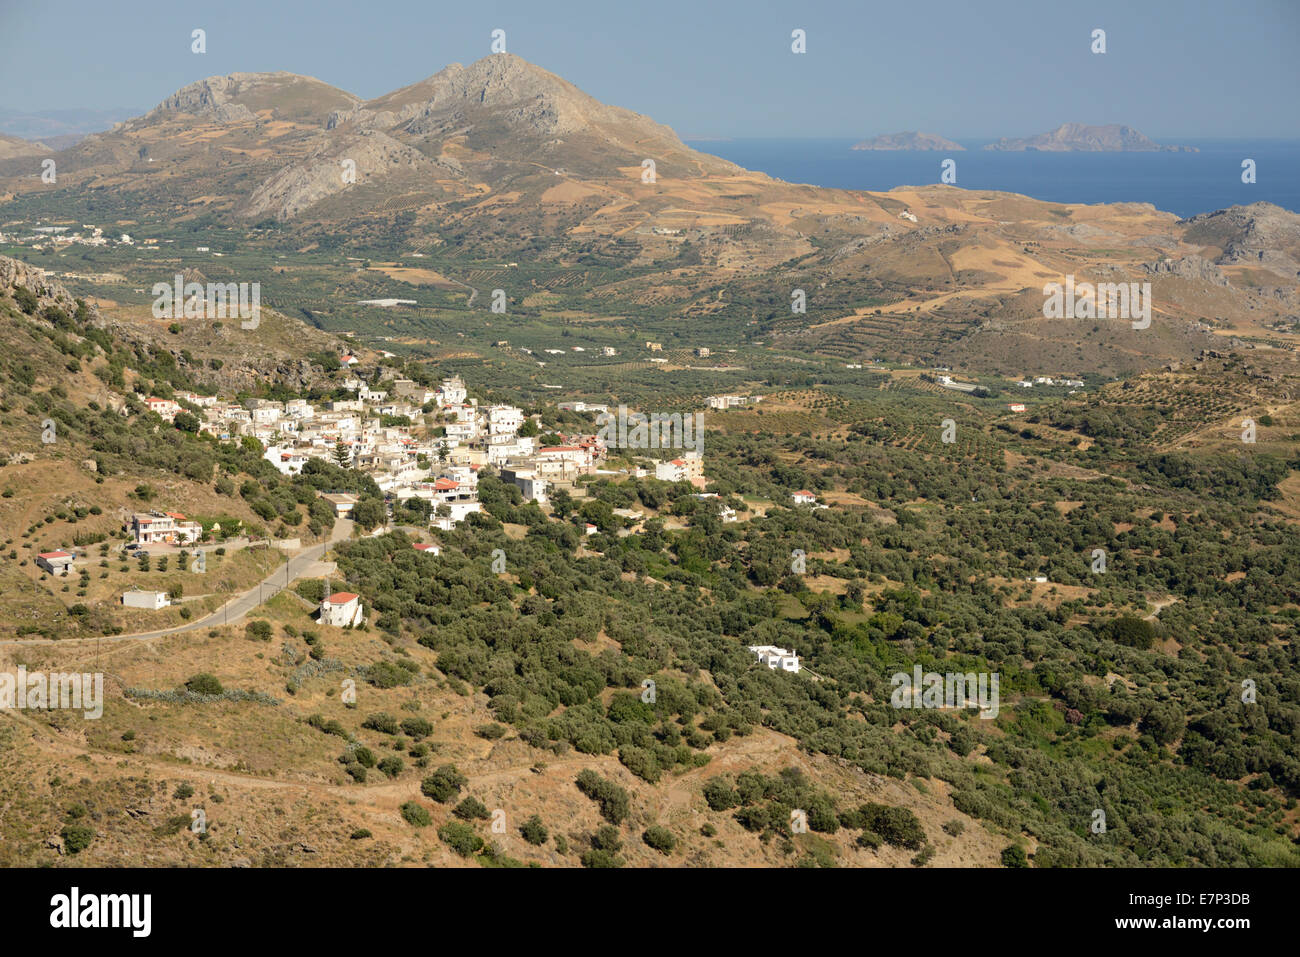 Europa, Grecia, Creta, Grecia, isla mediterránea, aldea Mirthios Foto de stock